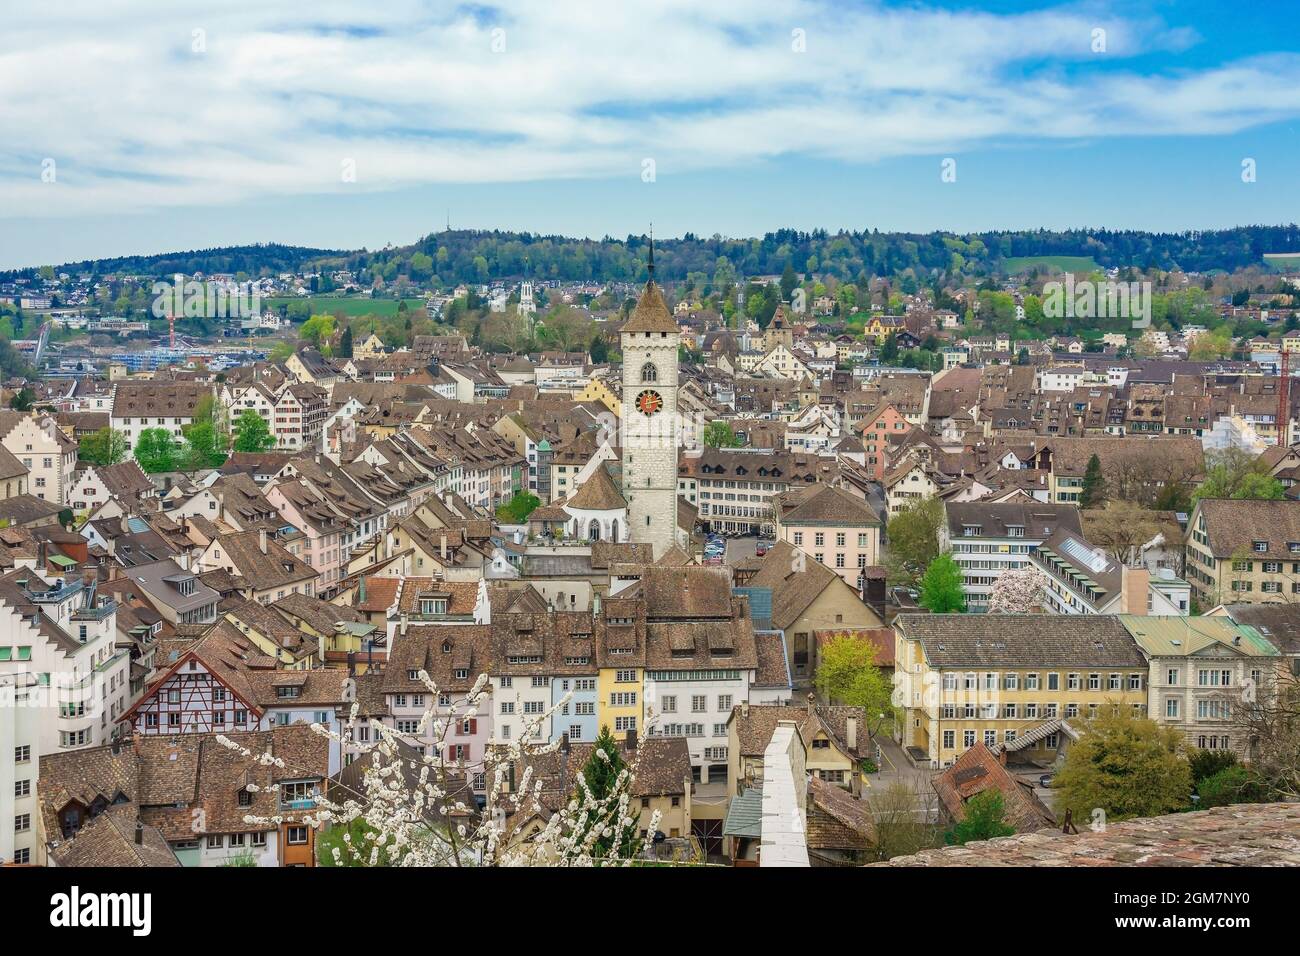 Vue panoramique sur la vieille ville de Schaffhausen, Suisse depuis la forteresse de Munot. Canton suisse de Schaffhausen dans le nord de la Suisse Banque D'Images